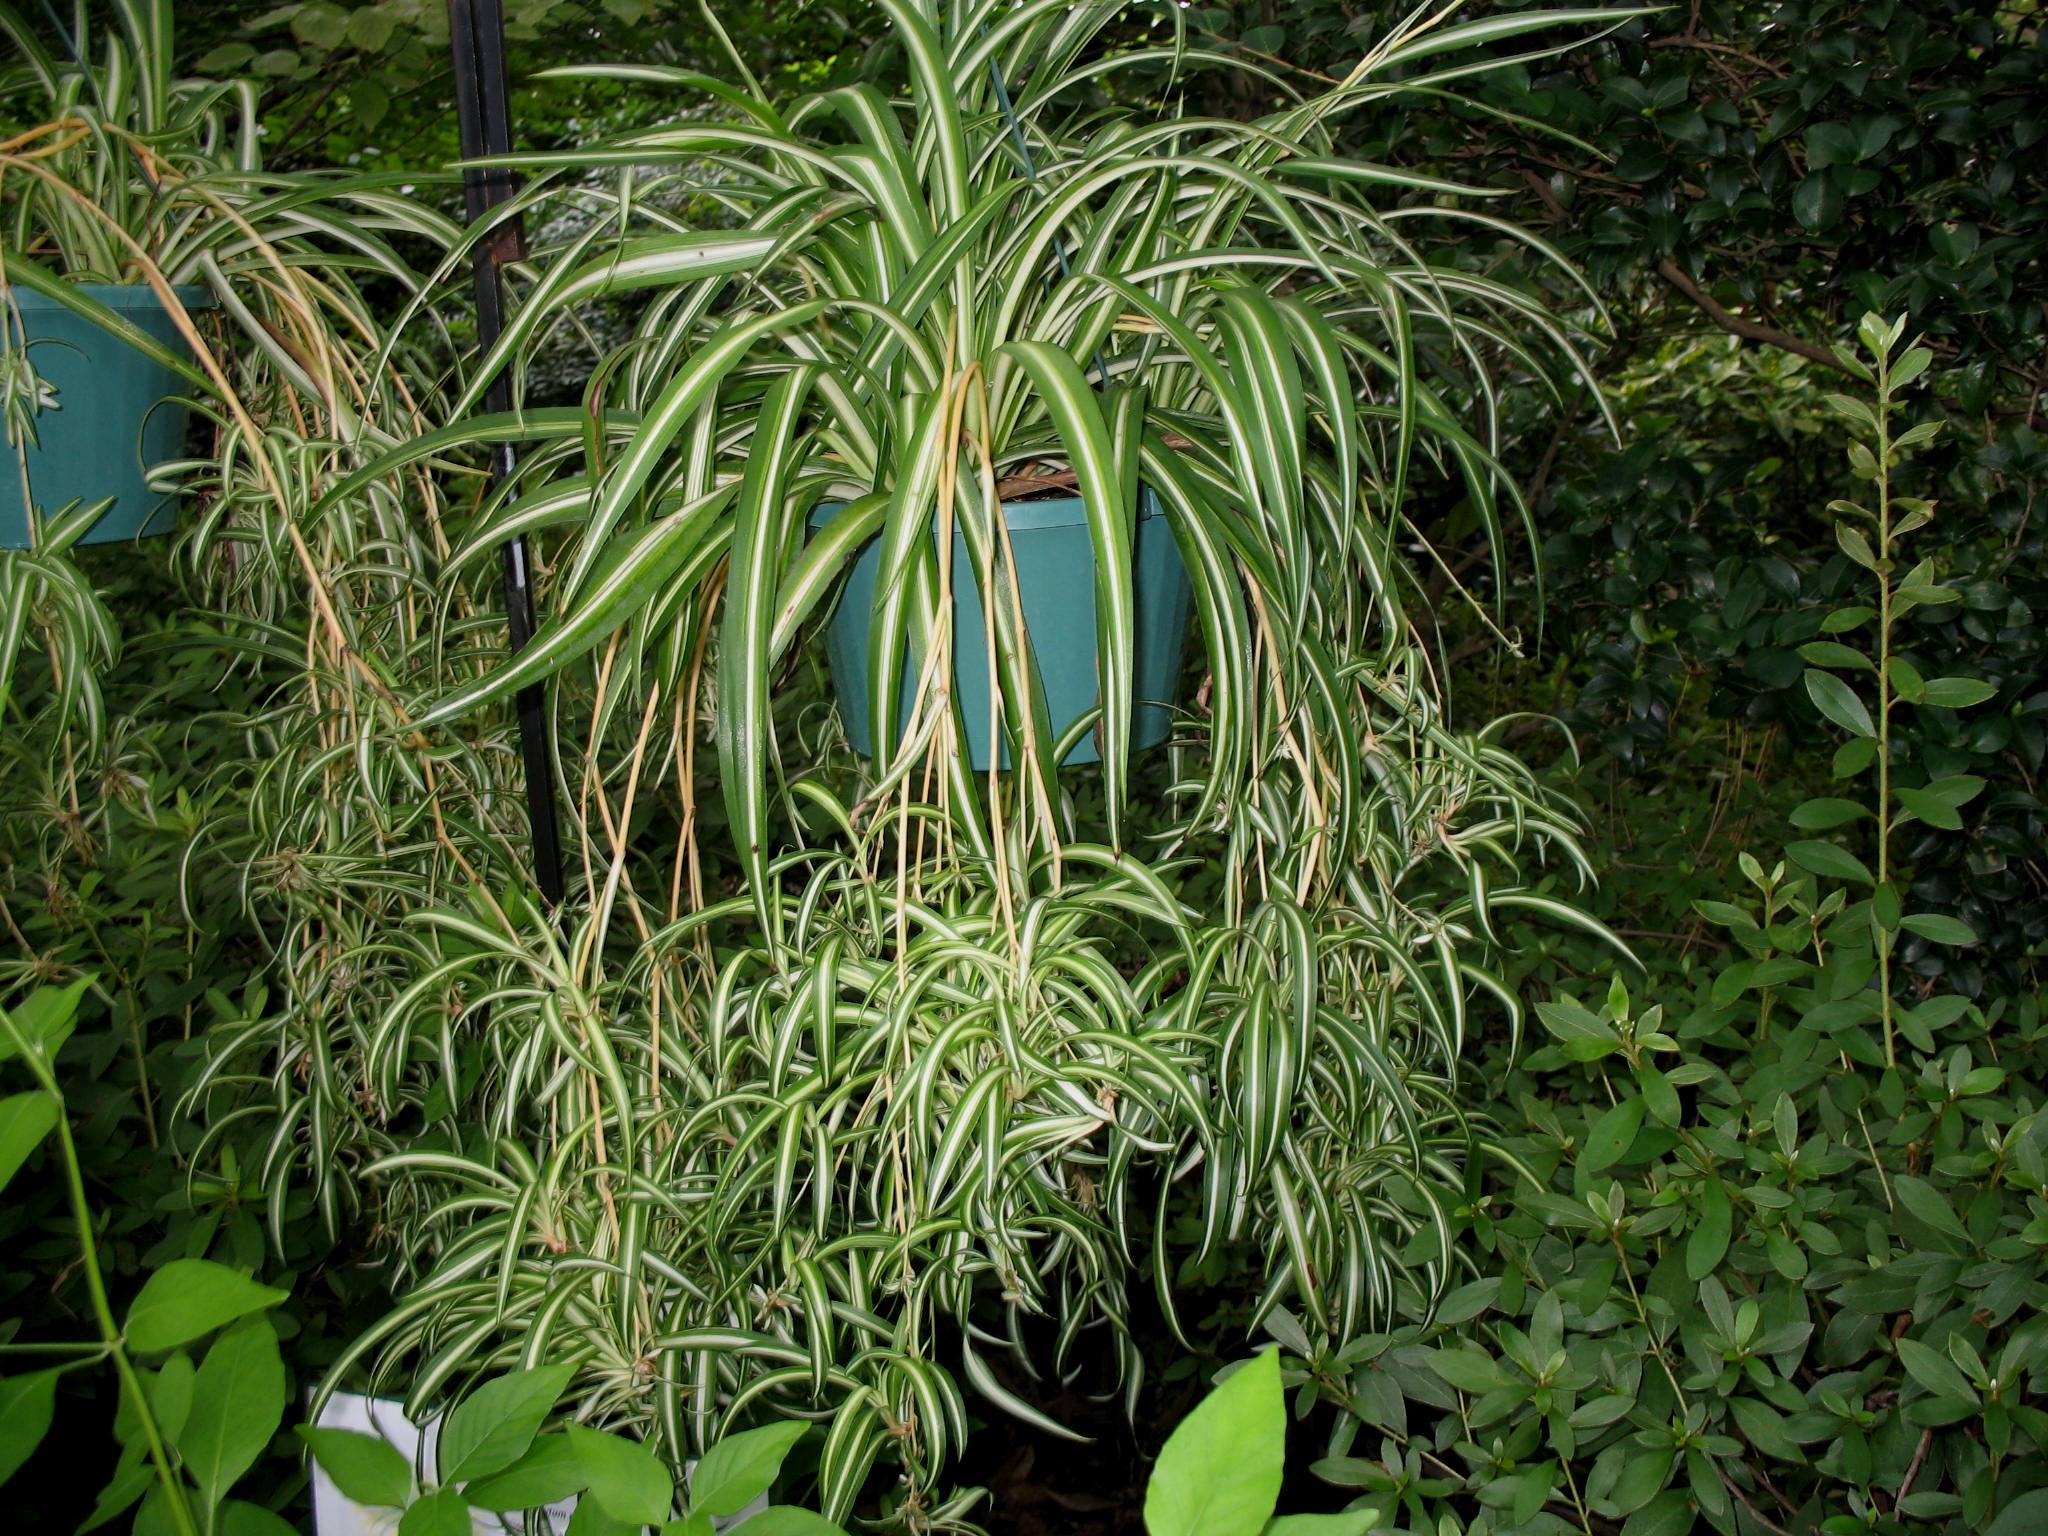 Chlorophytum comosum 'Vittatum' / Spider Plant